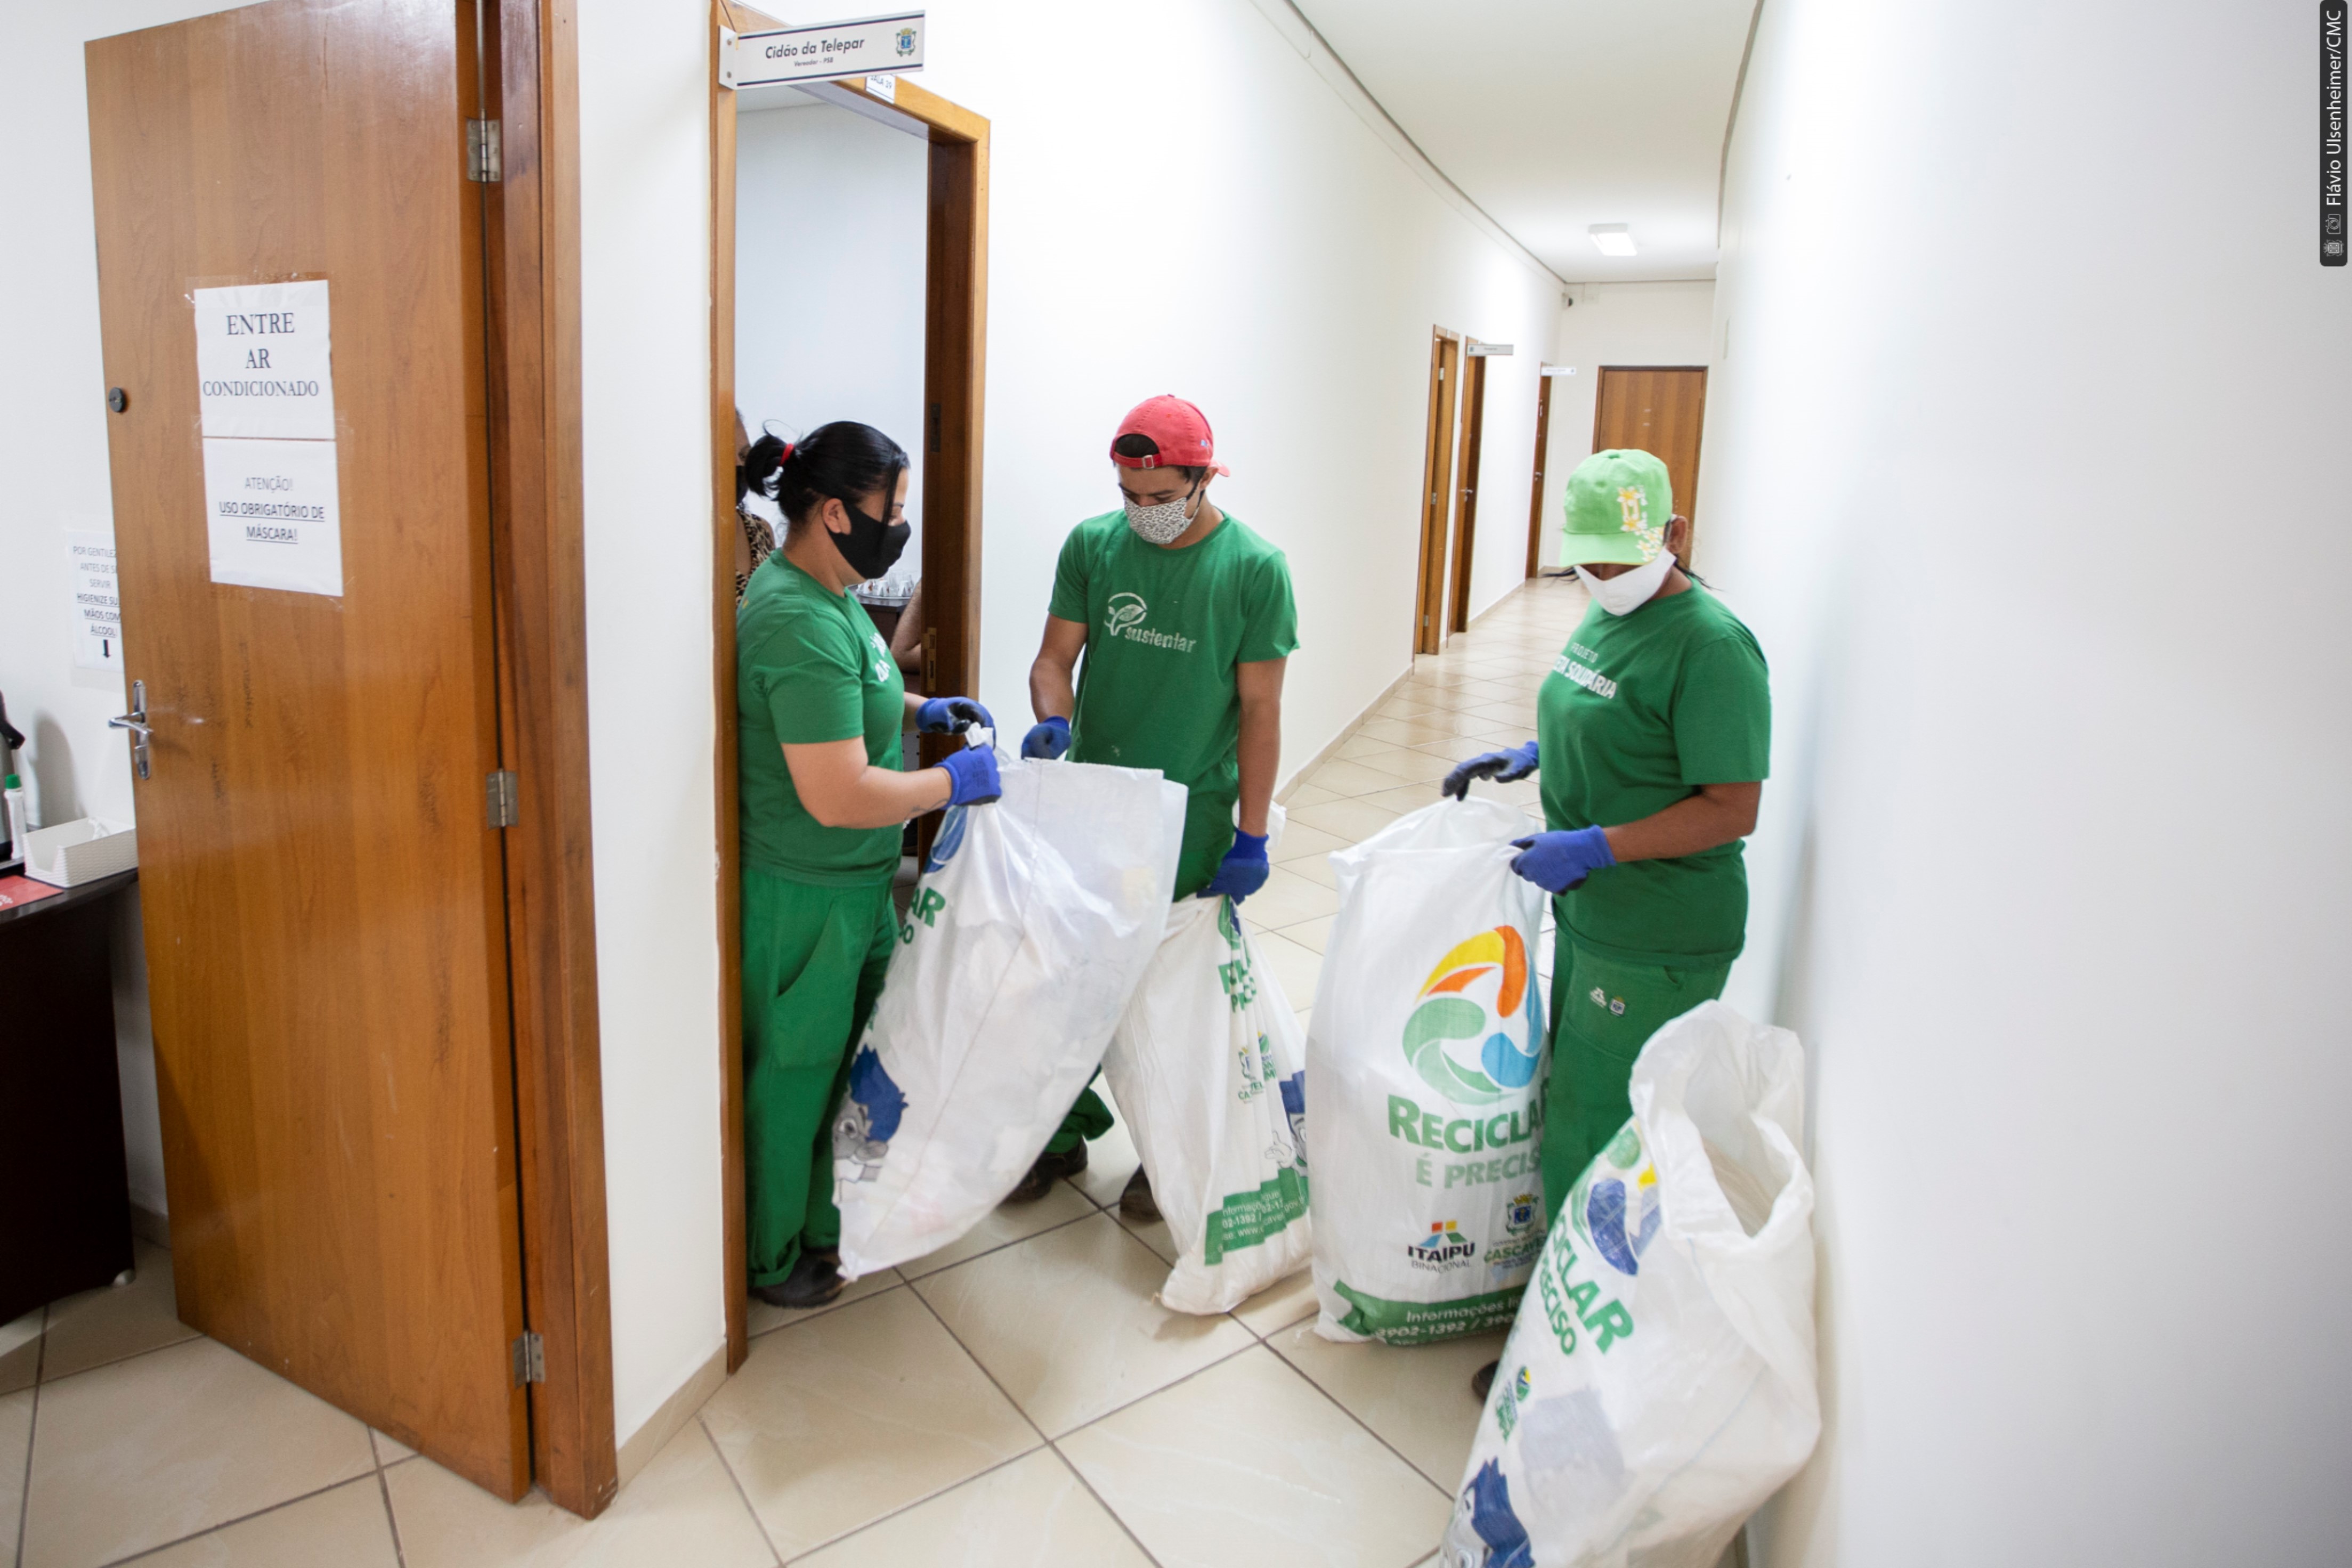 Representantes da Cootacar passaram pelos gabinetes e salas da Câmara recolhendo o material reciclável